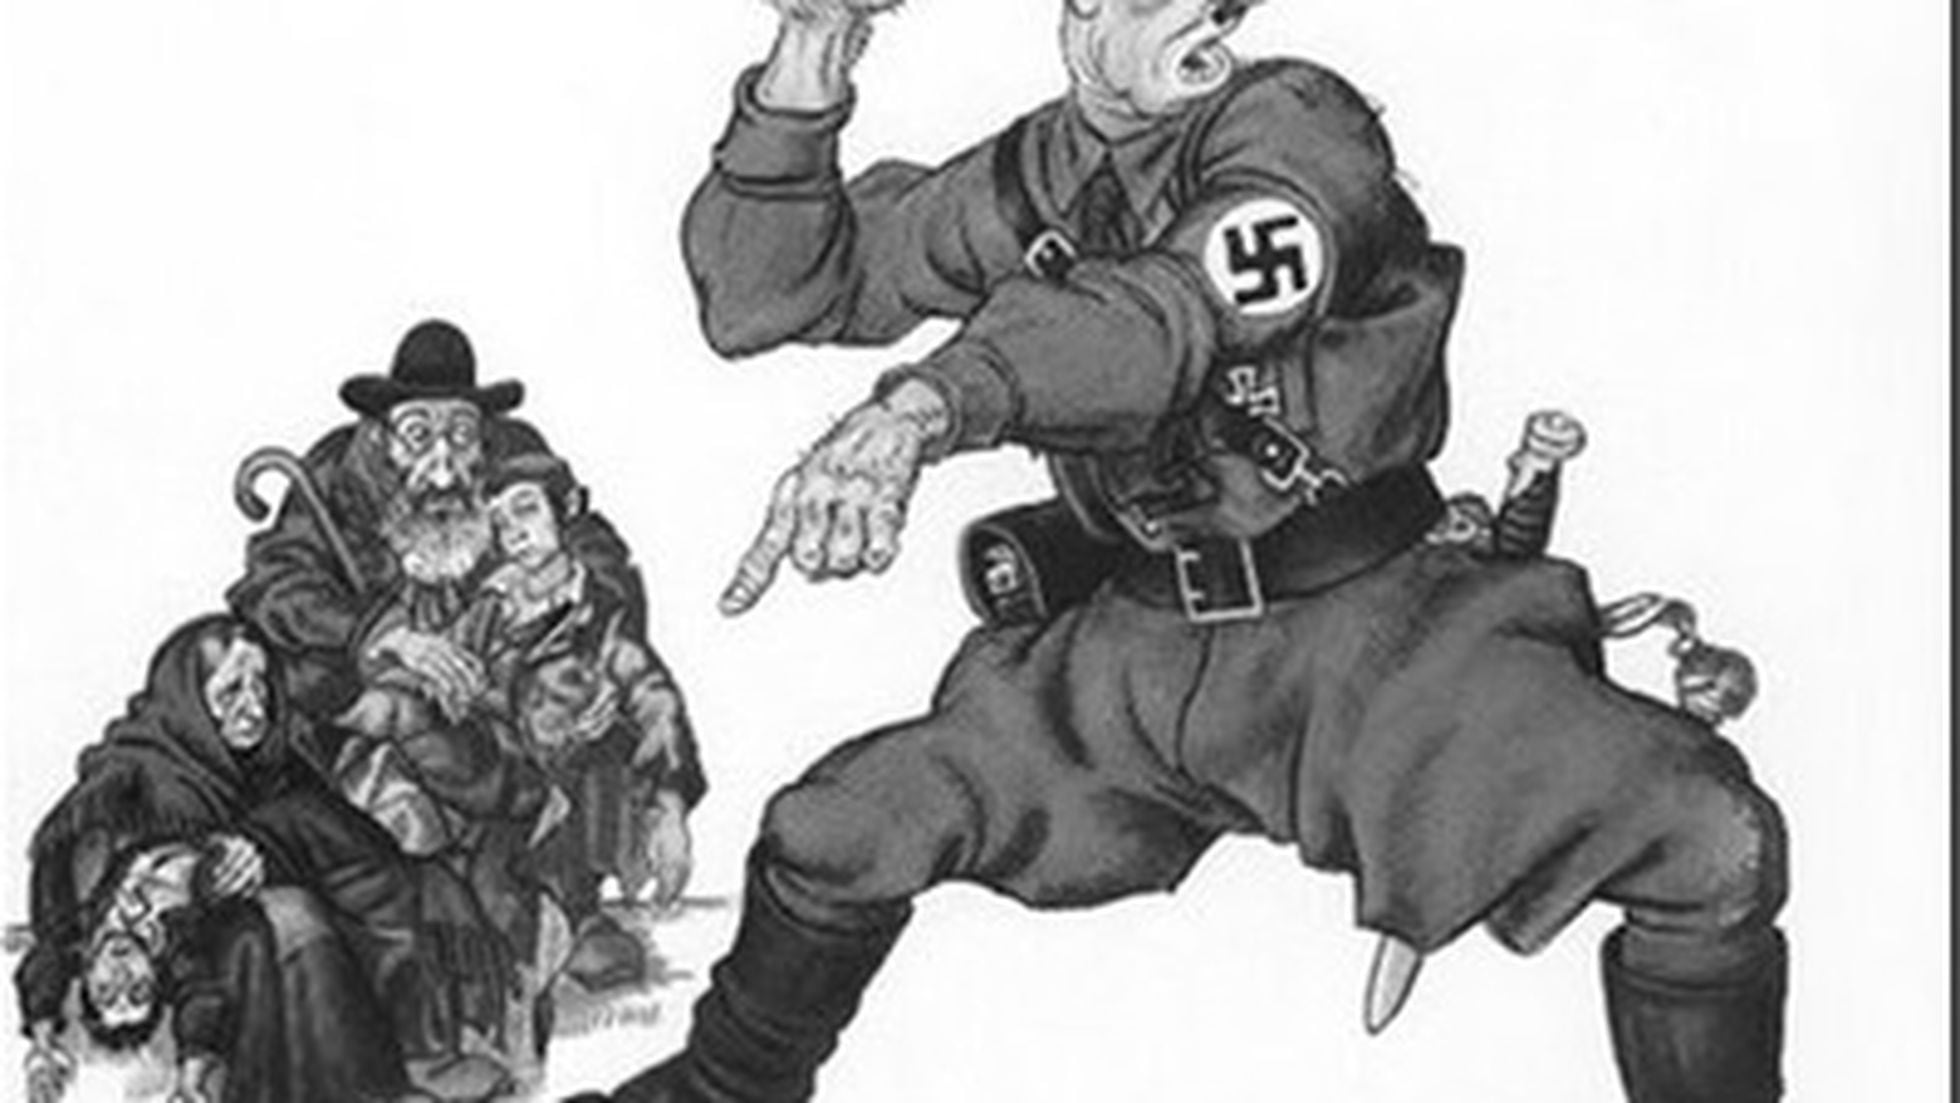 Szyk, el caricaturista que encaró a Hitler | Cultura | EL PAÍS